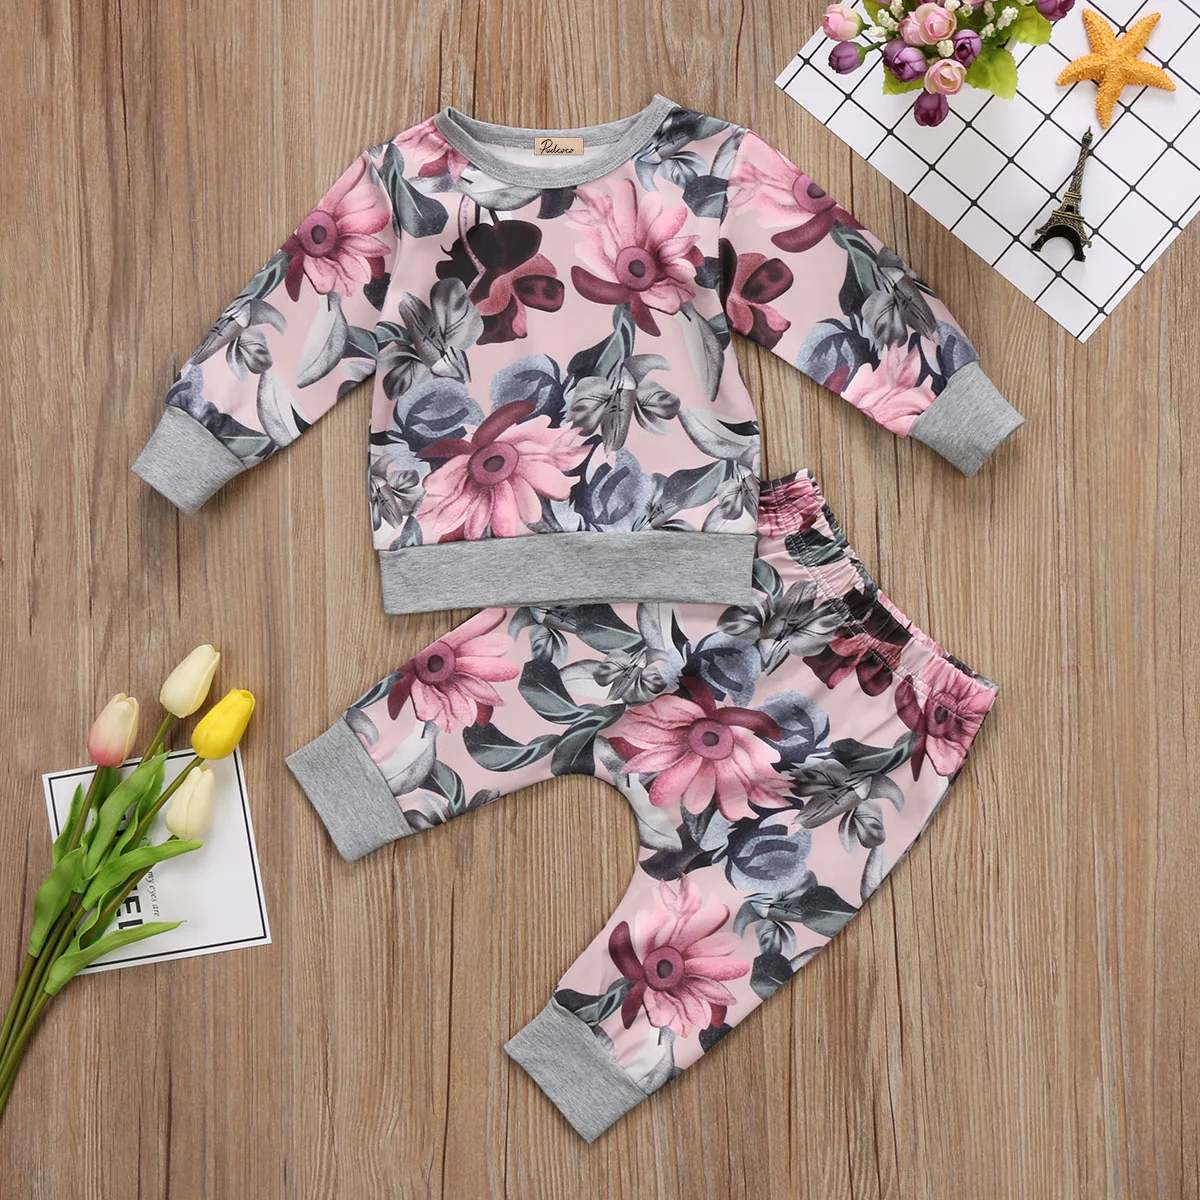 Pudcoco/Одежда для девочек хлопковая одежда для новорожденных девочек, пальто, футболка Топ+ штаны с цветочным принтом, комплект с леггинсами